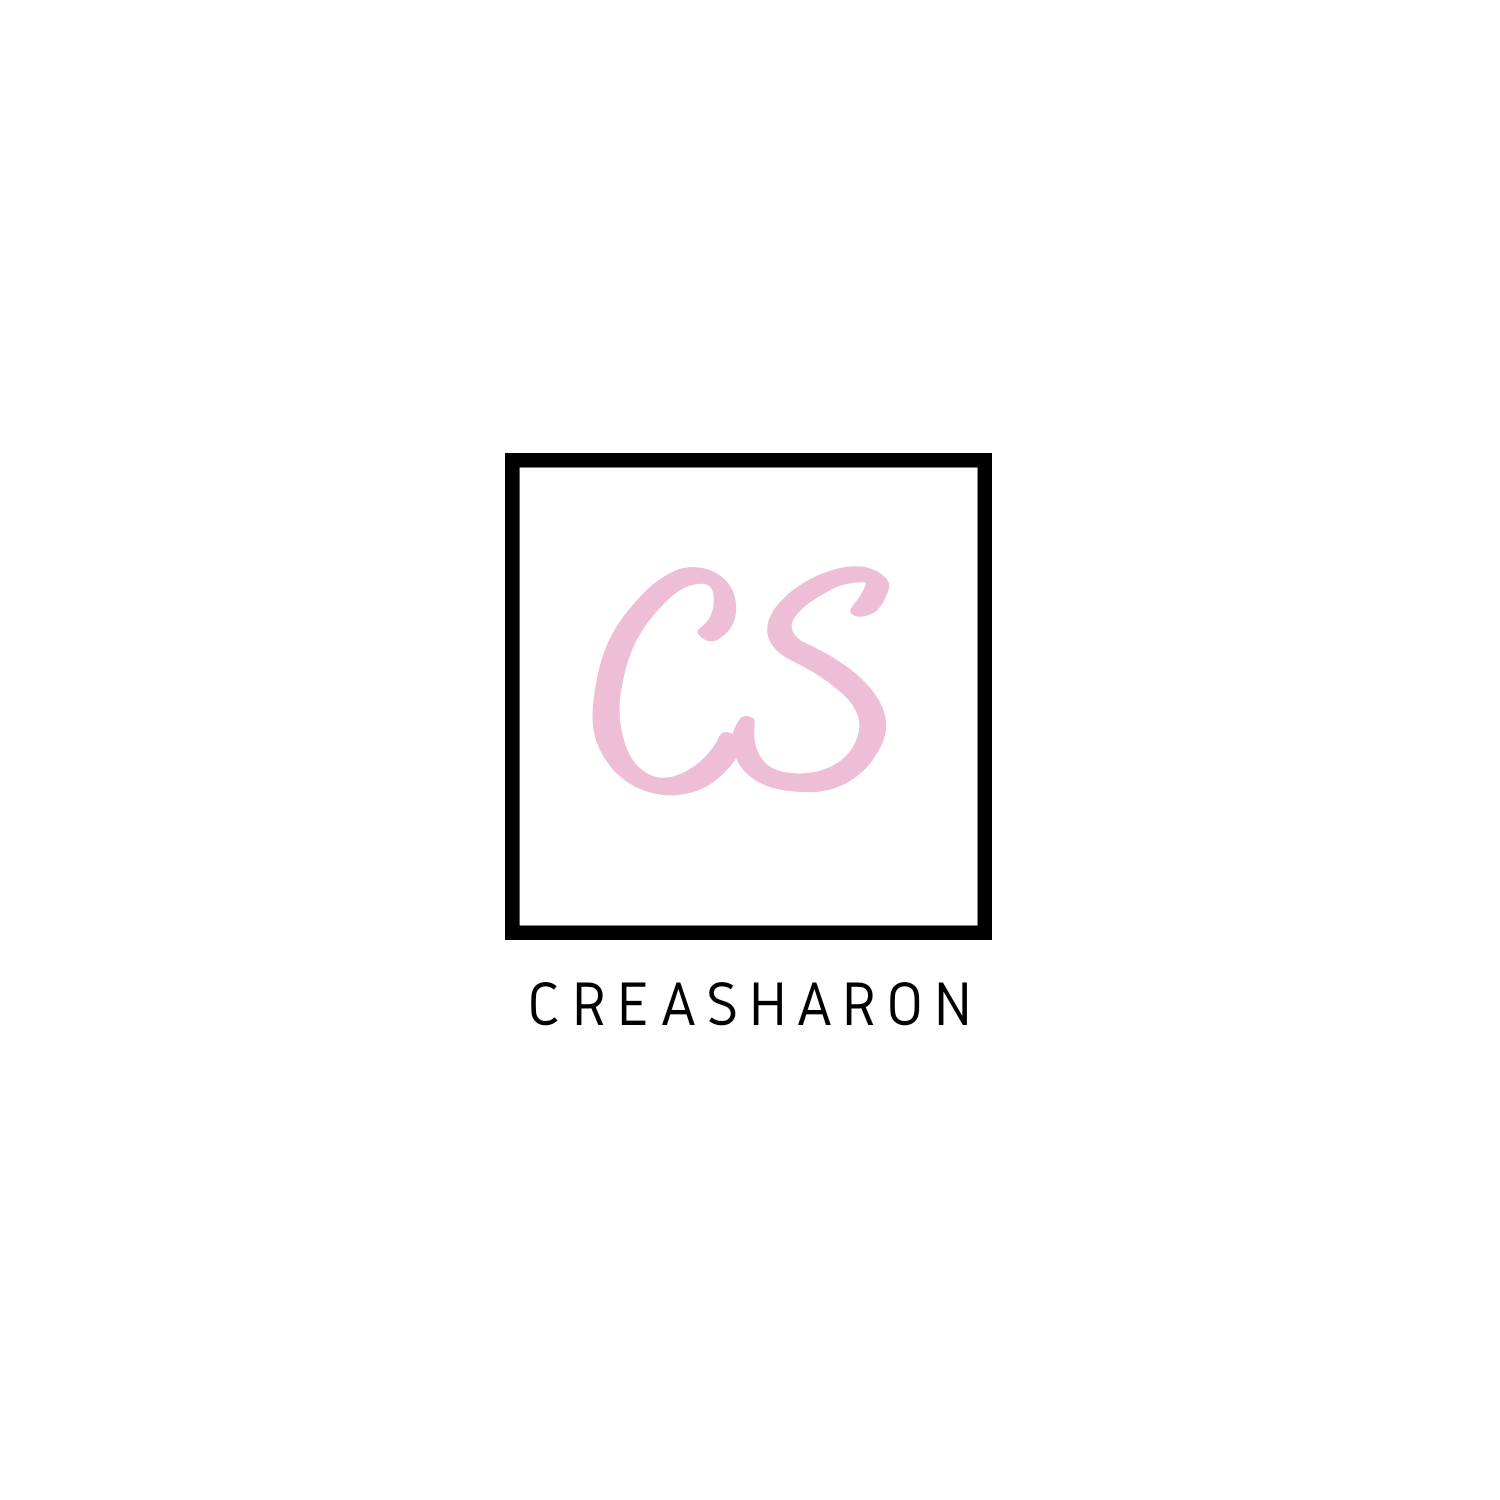 Creasharon